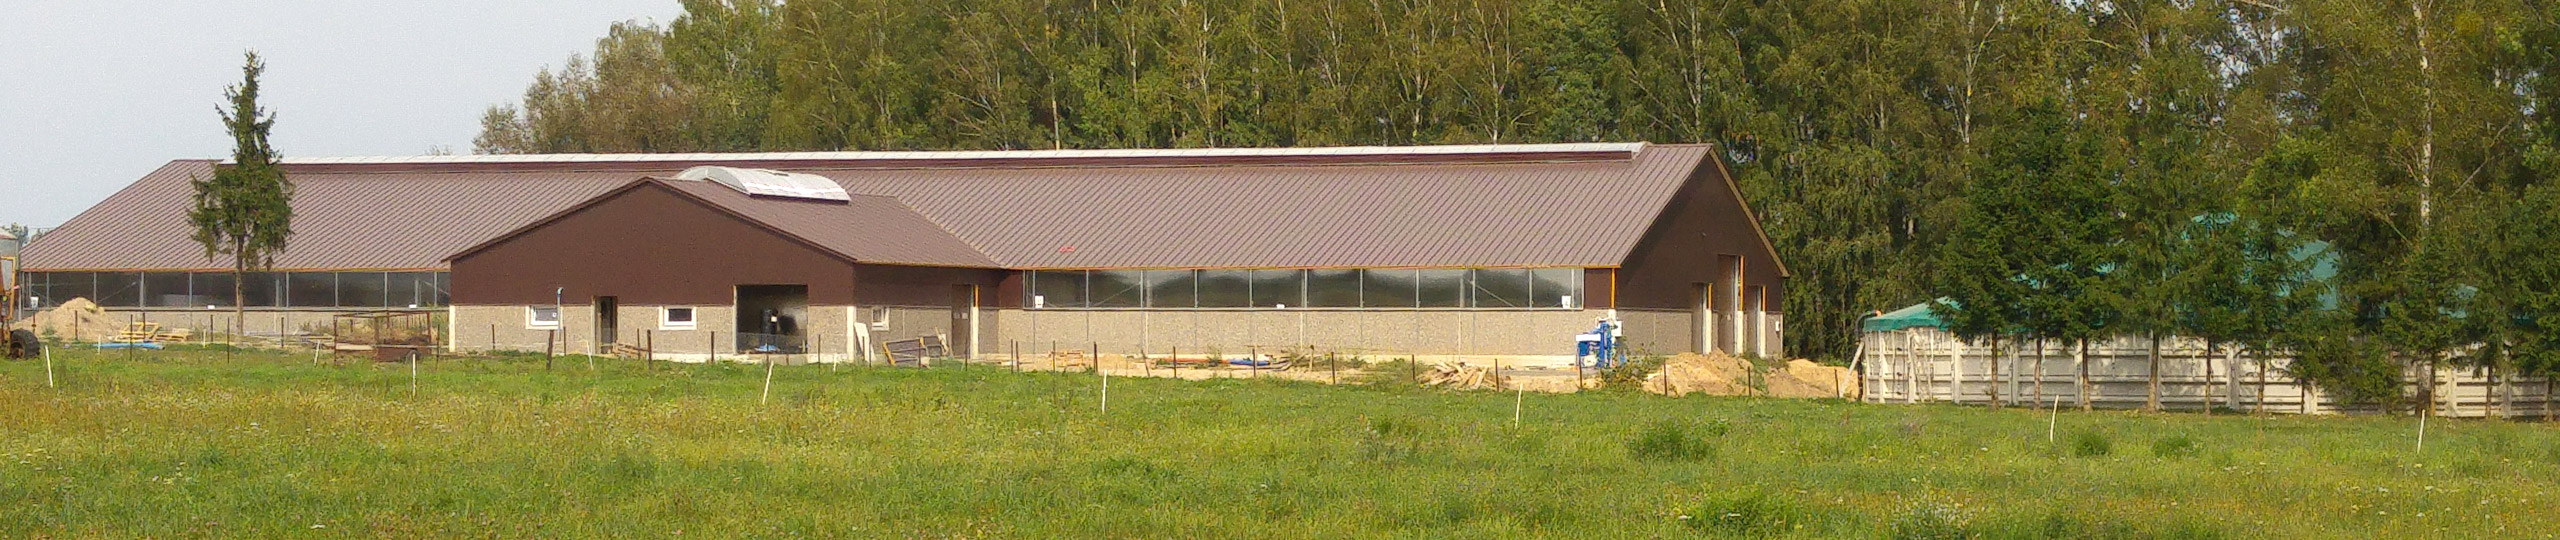 Ściany do obory i zbiorniki dla rolnictwa